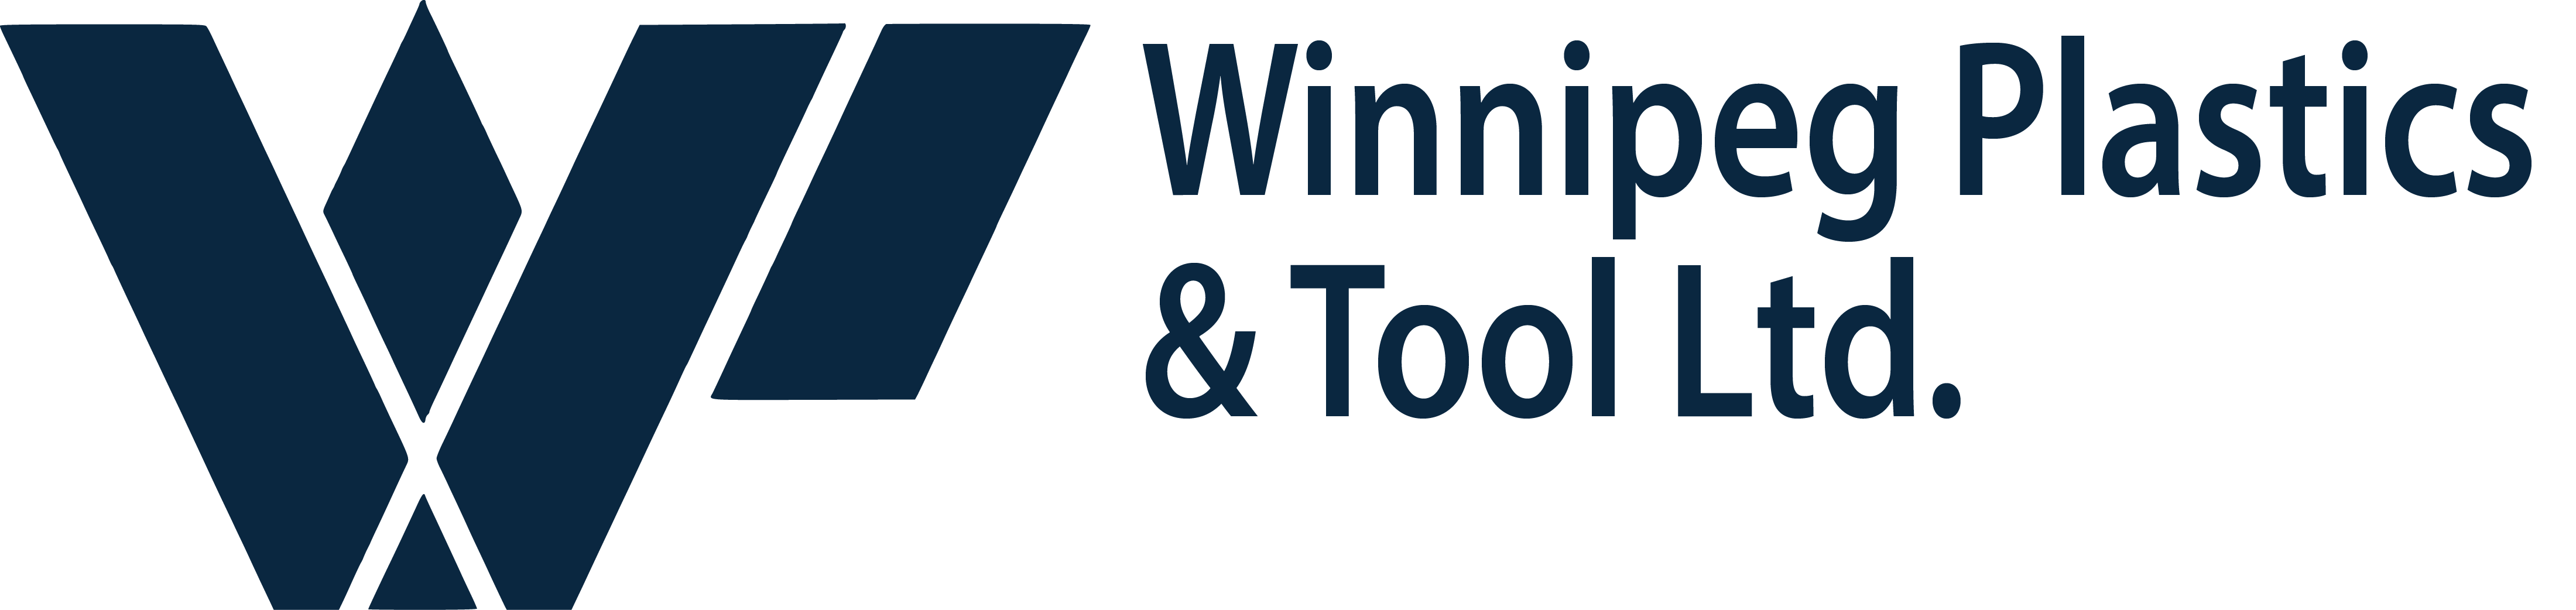 Winnipeg Plastics & Tool Ltd. Logo